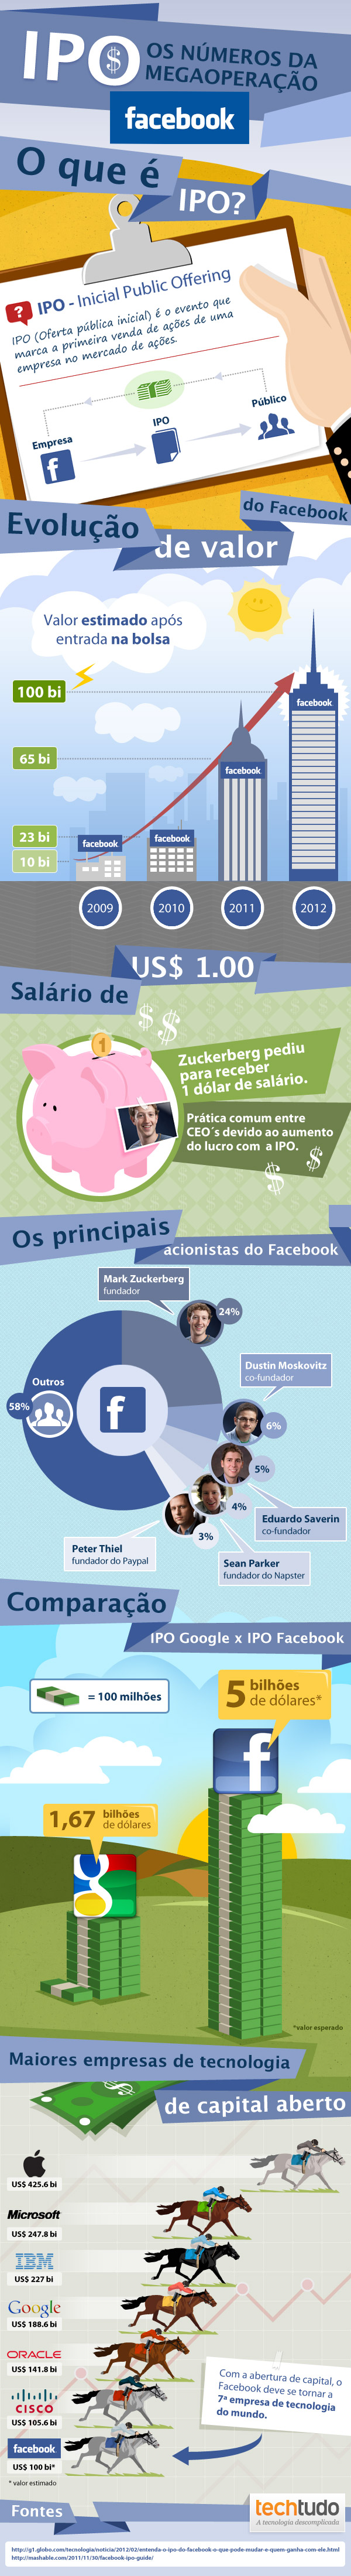 IPO do Facebook